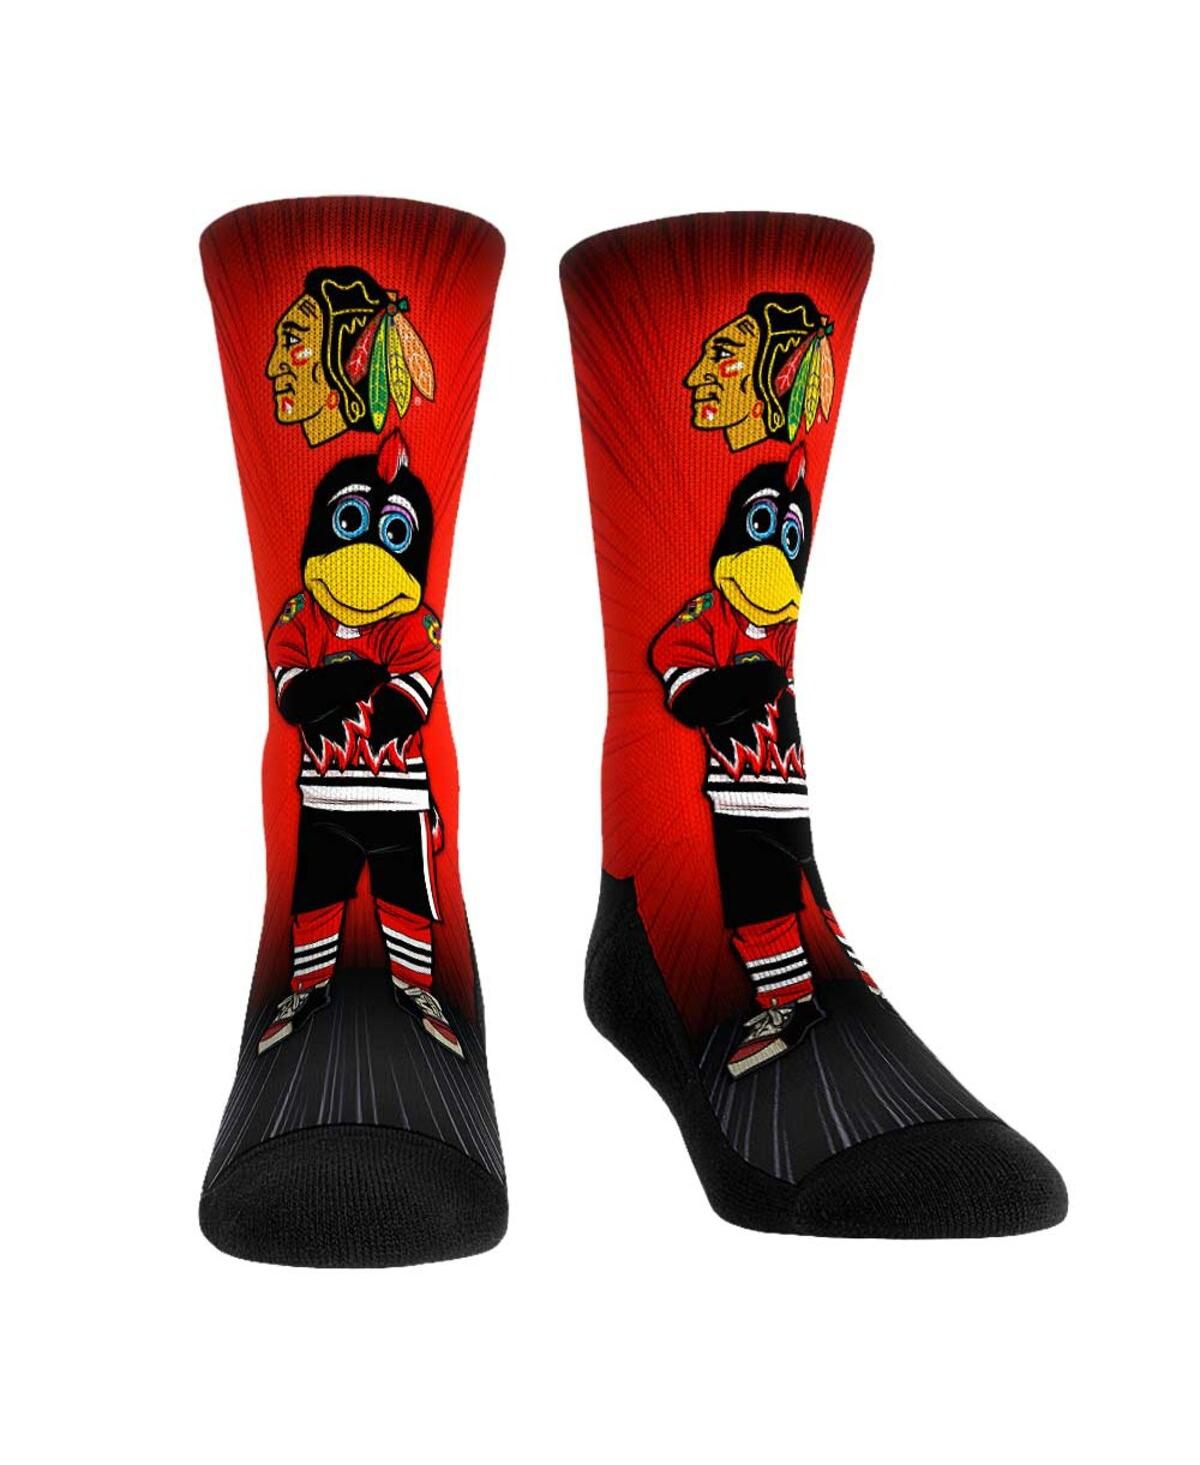 Men's and Women's Rock 'Em Socks Chicago Blackhawks Mascot Pump Up Crew Socks - Multi